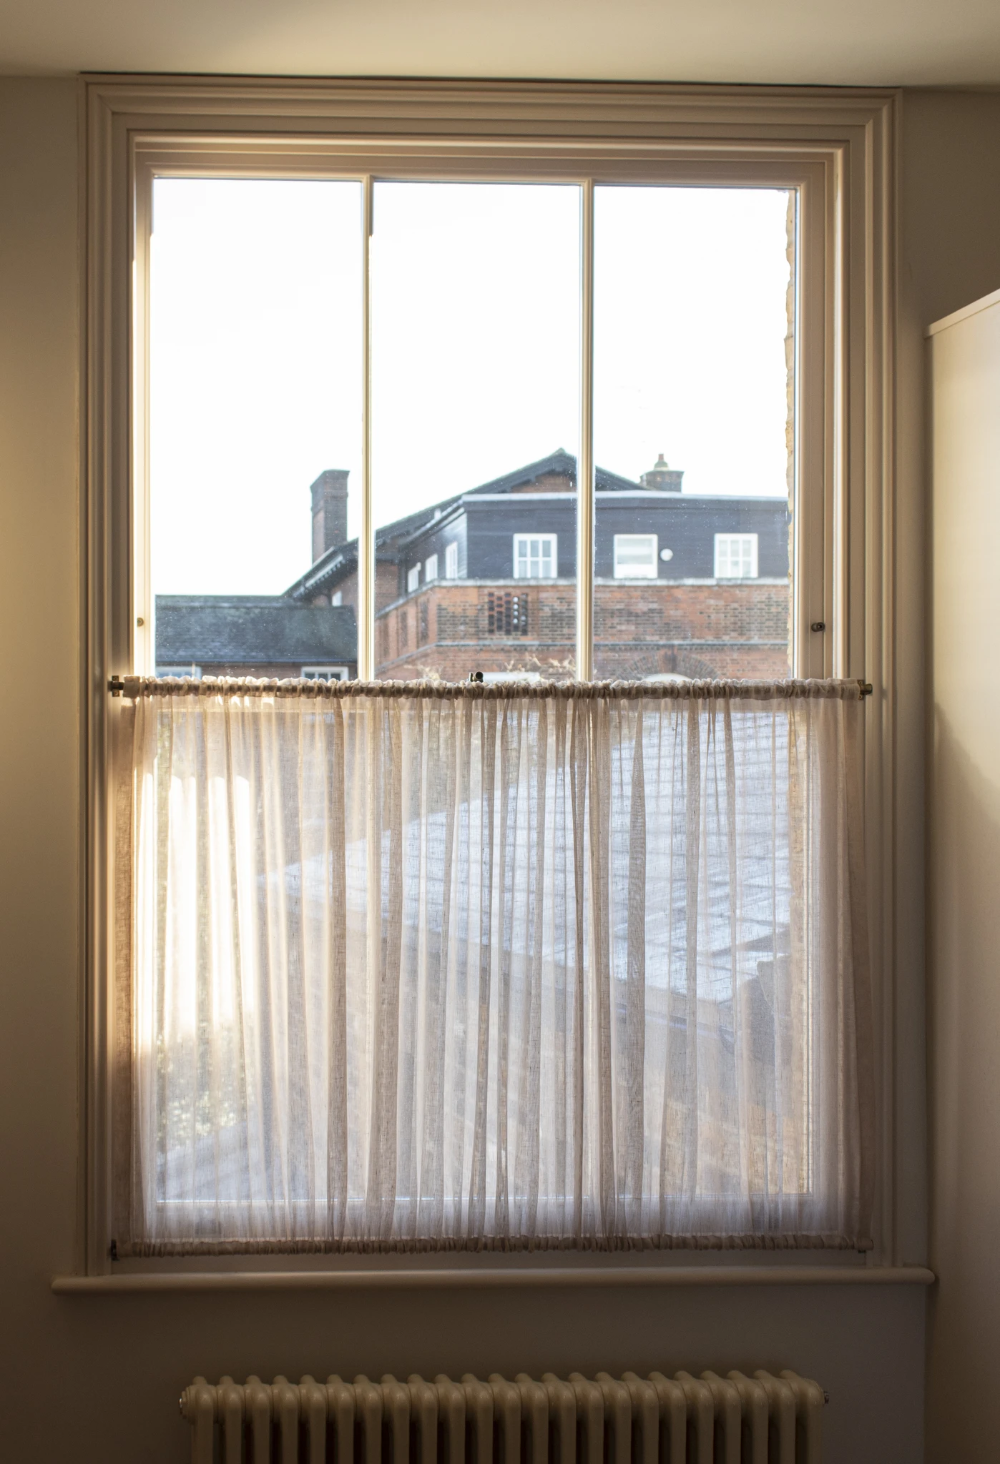 Creative Bathroom Window Curtain Ideas
for a Stylish Look